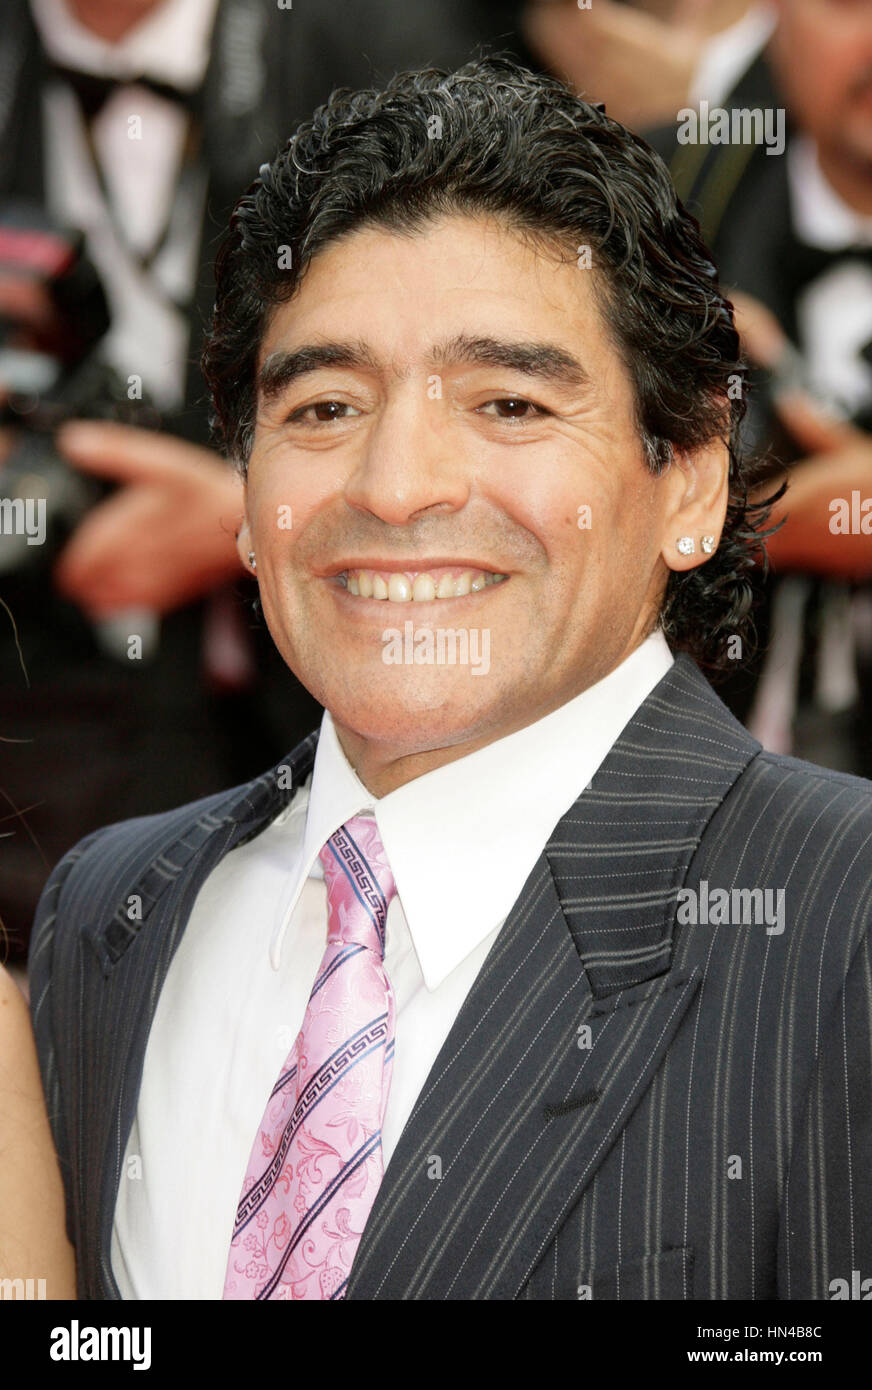 Diego Maradona kommt am Palais des Festivals für die Premiere des Films Che bei den 61. Internationalen Filmfestspielen am 21. Mai 2008 in Cannes, Frankreich. Foto von Francis Specker Stockfoto